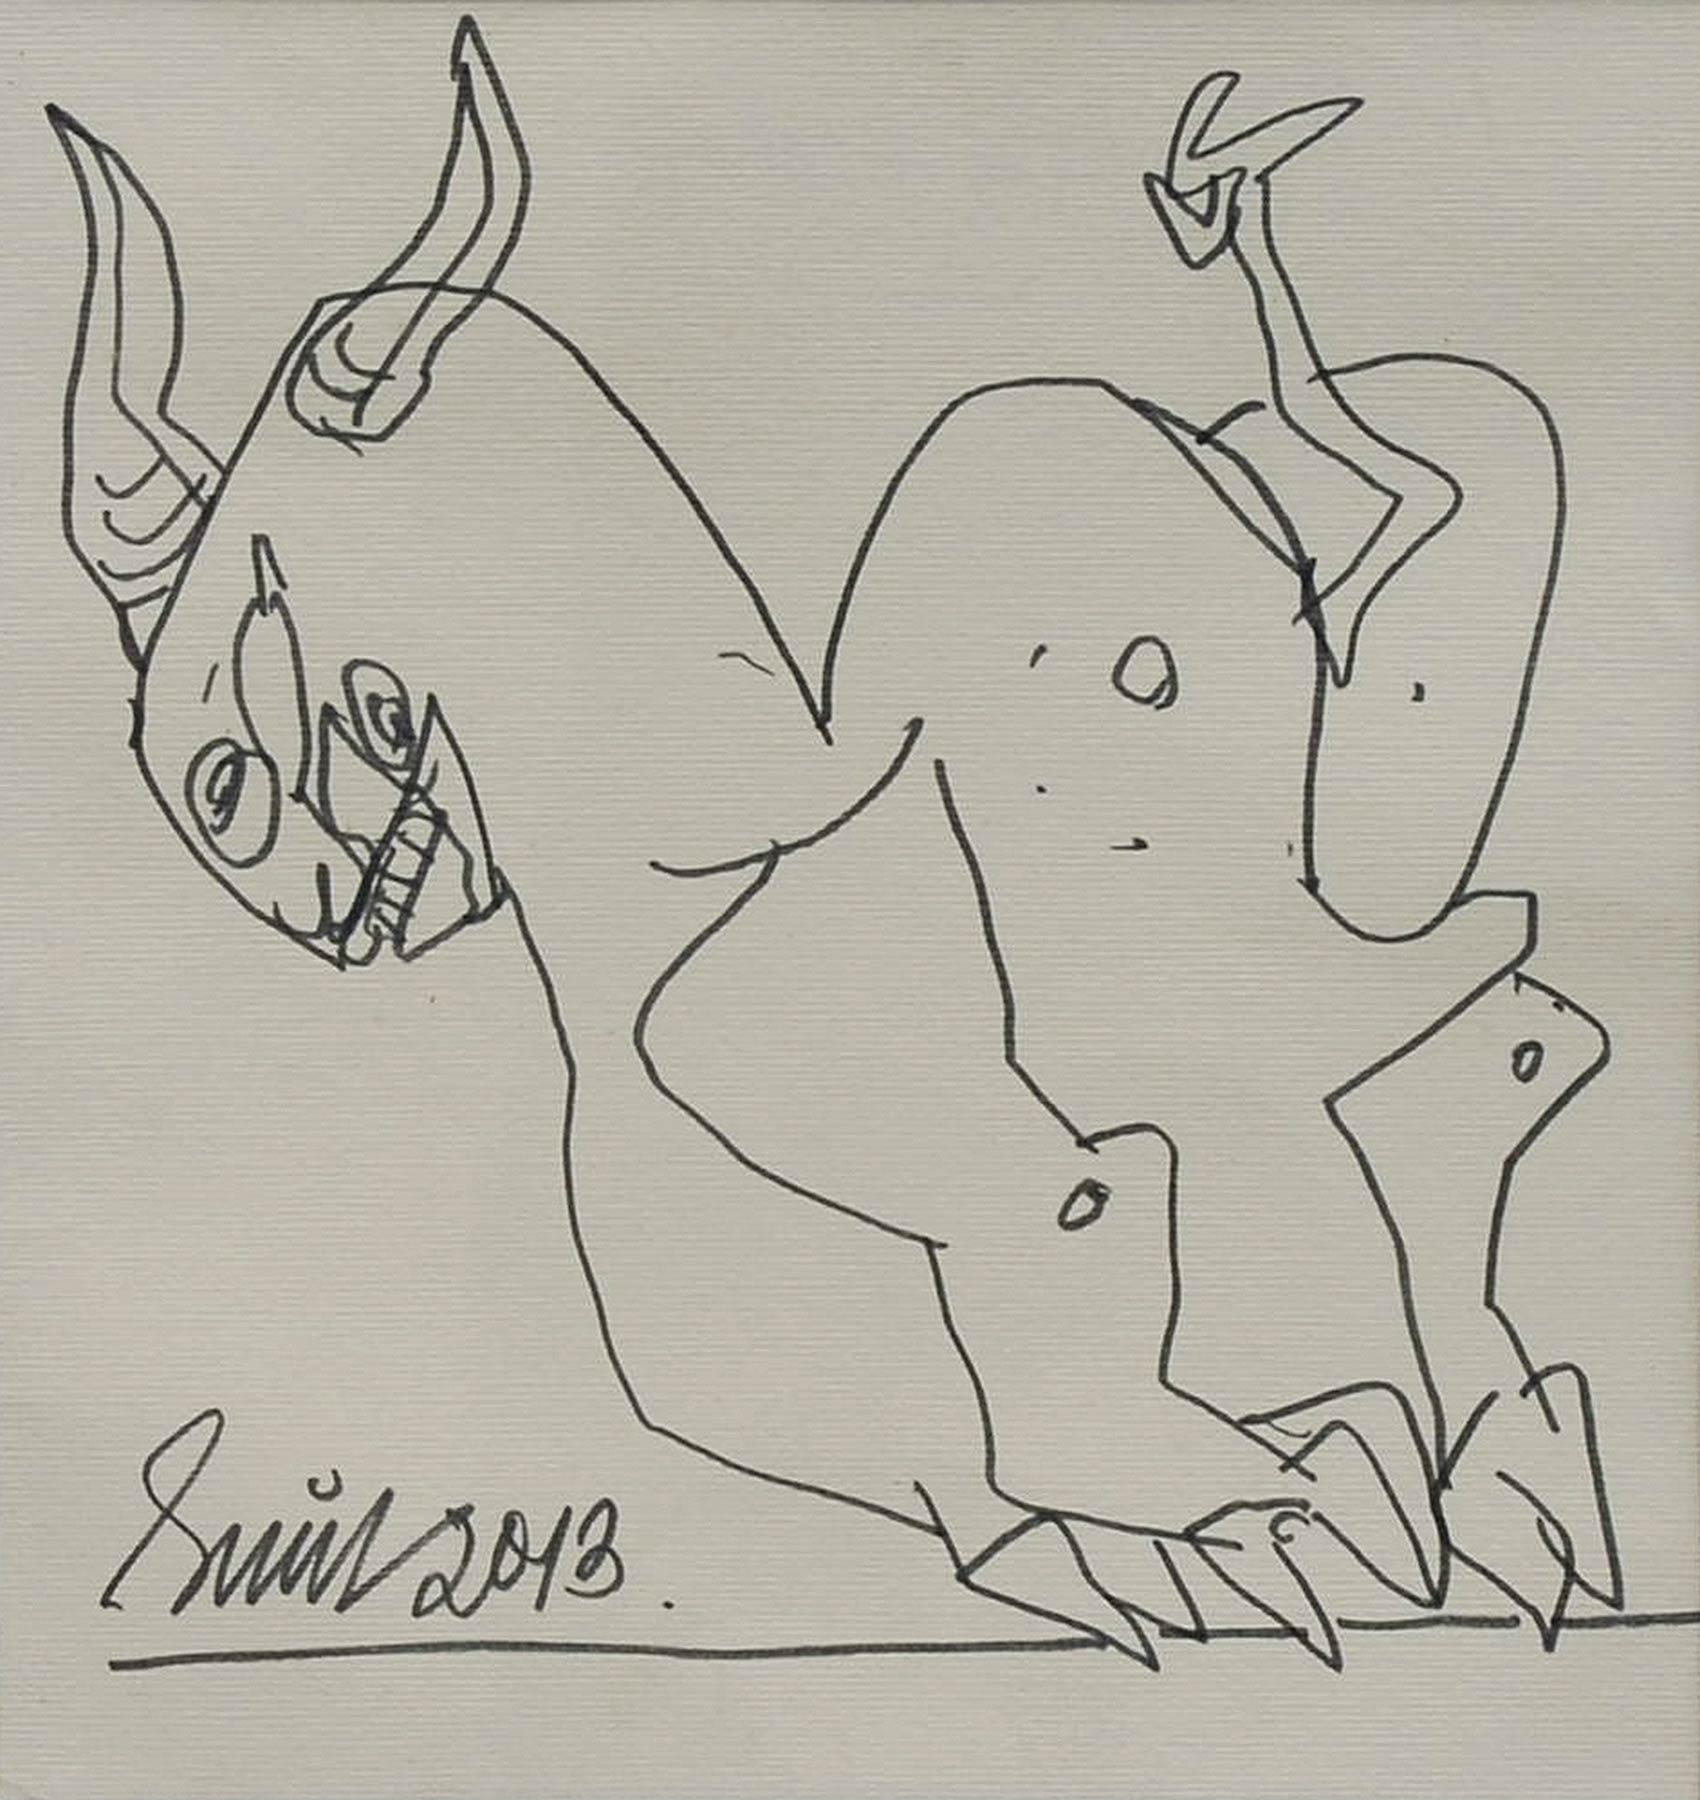 Sunil Das - Sans titre - 8 x 8.25 pouces (taille non encadrée)
Plume et encre sur papier
Expédition comprise, sous forme prête à être accrochée.

Des figures, des torses féminins en nudité frontale, une vache accroupie, un cheval et un cheval au